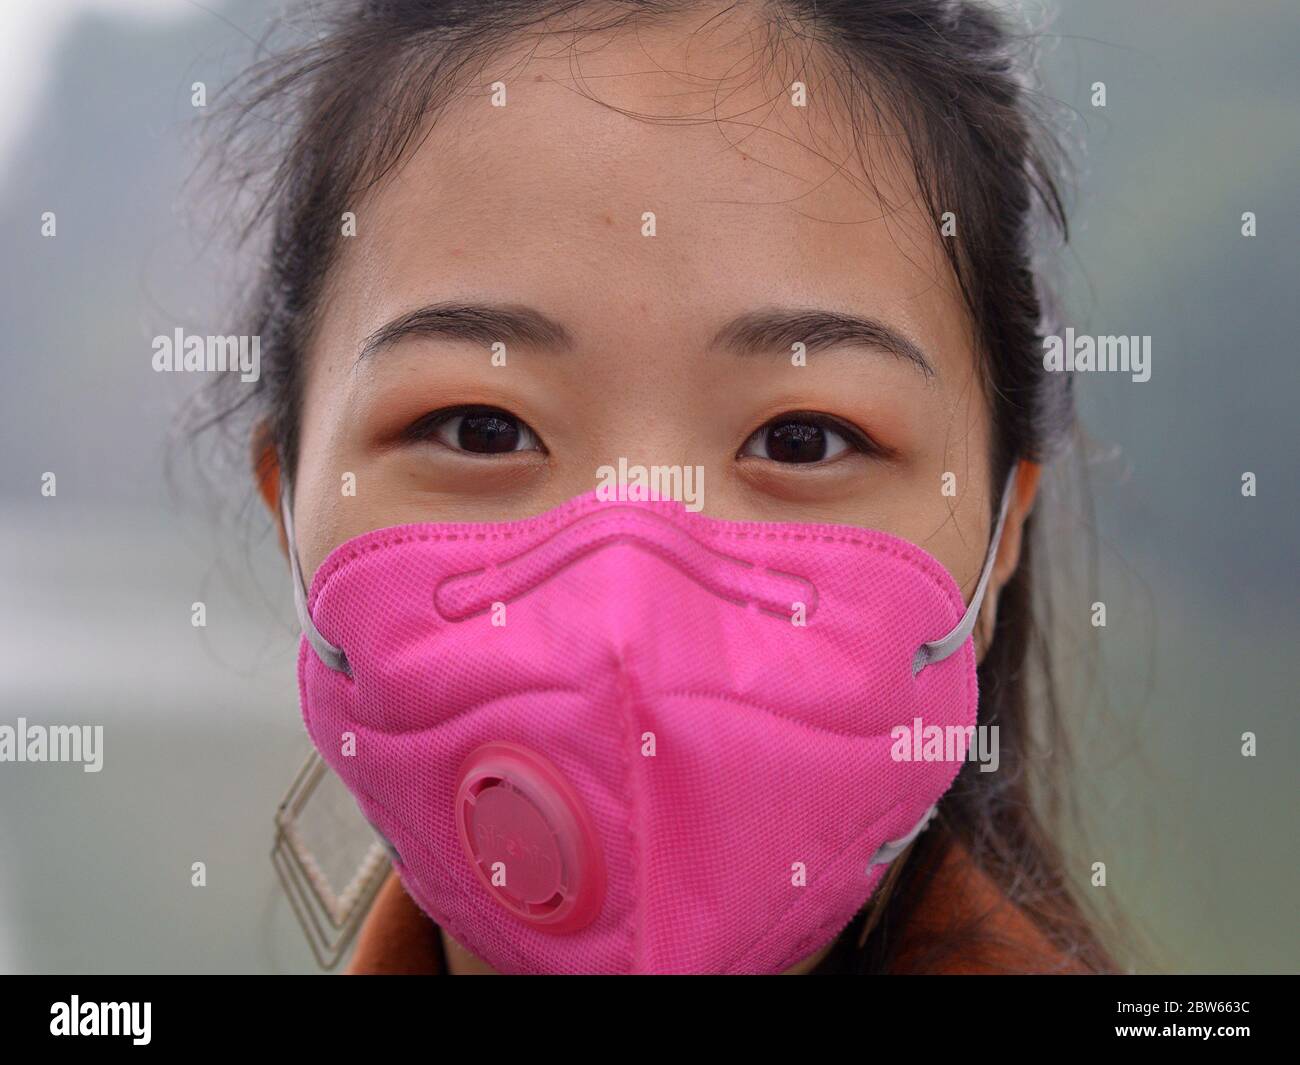 La jeune femme vietnamienne porte un masque facial rose avec valve respiratoire pendant la pandémie de 2019/20 du virus corona. Banque D'Images